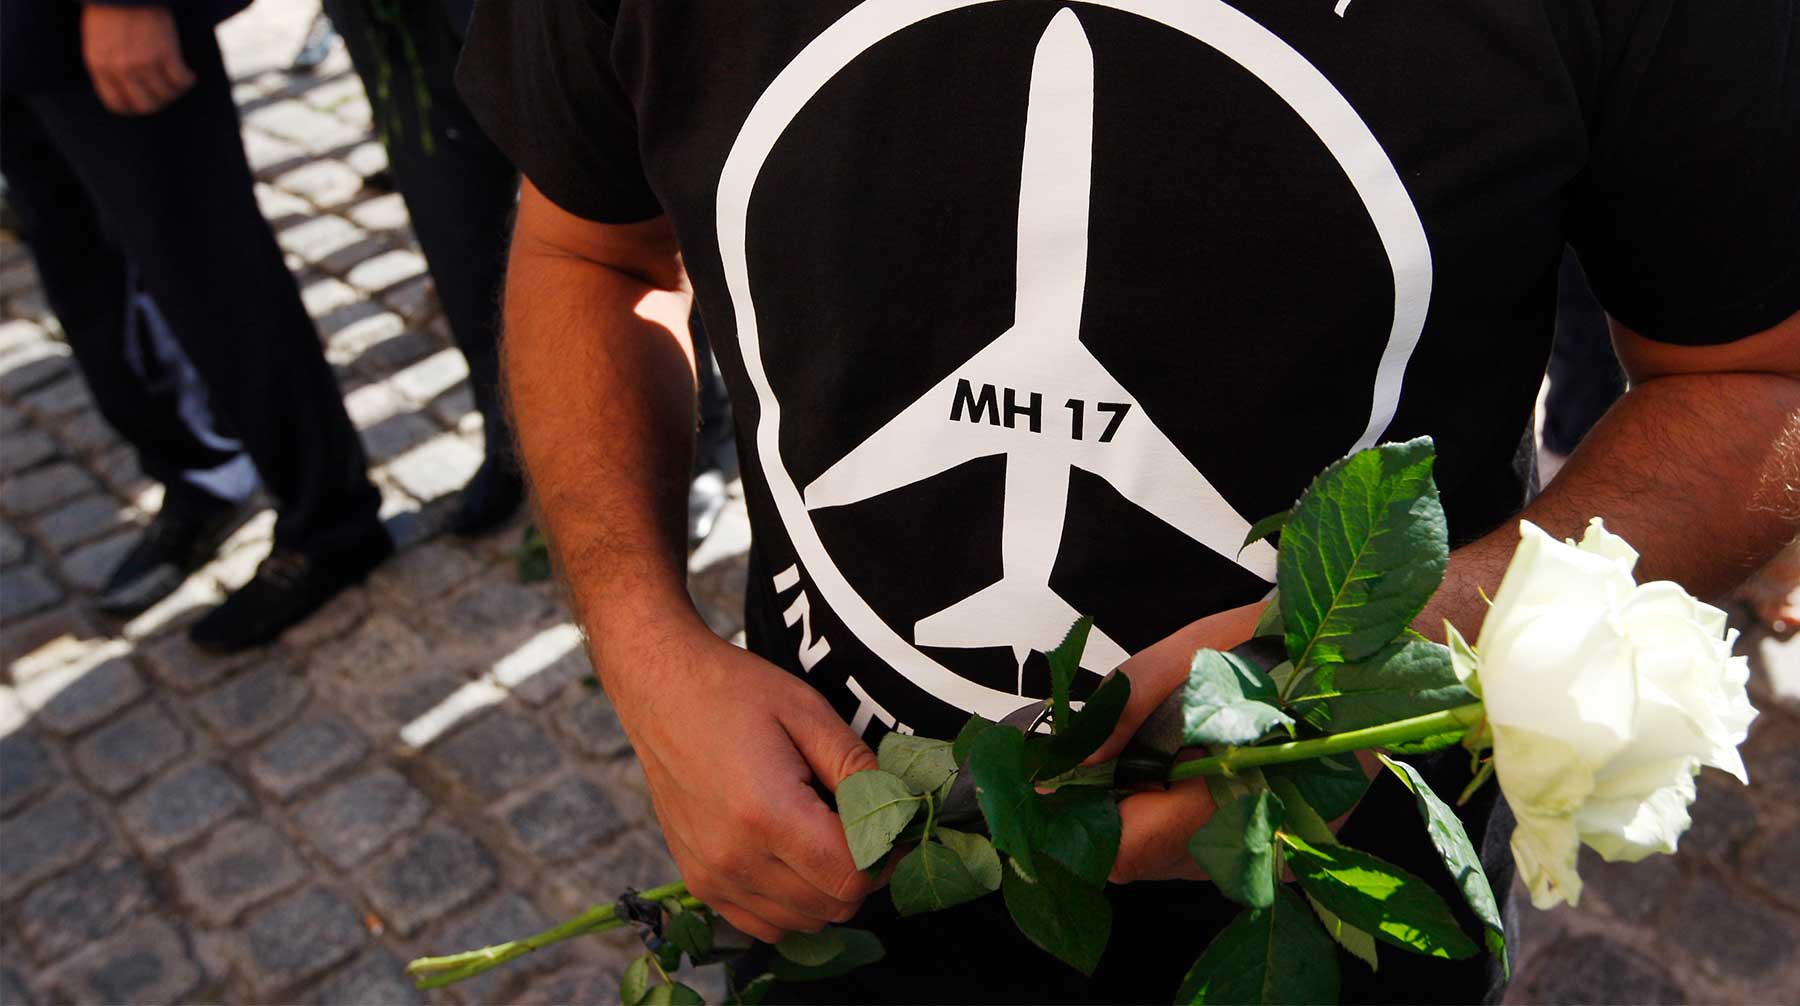 Dailystorm - Вашингтон призвал Москву привлечь к ответственности подозреваемых по делу MH17